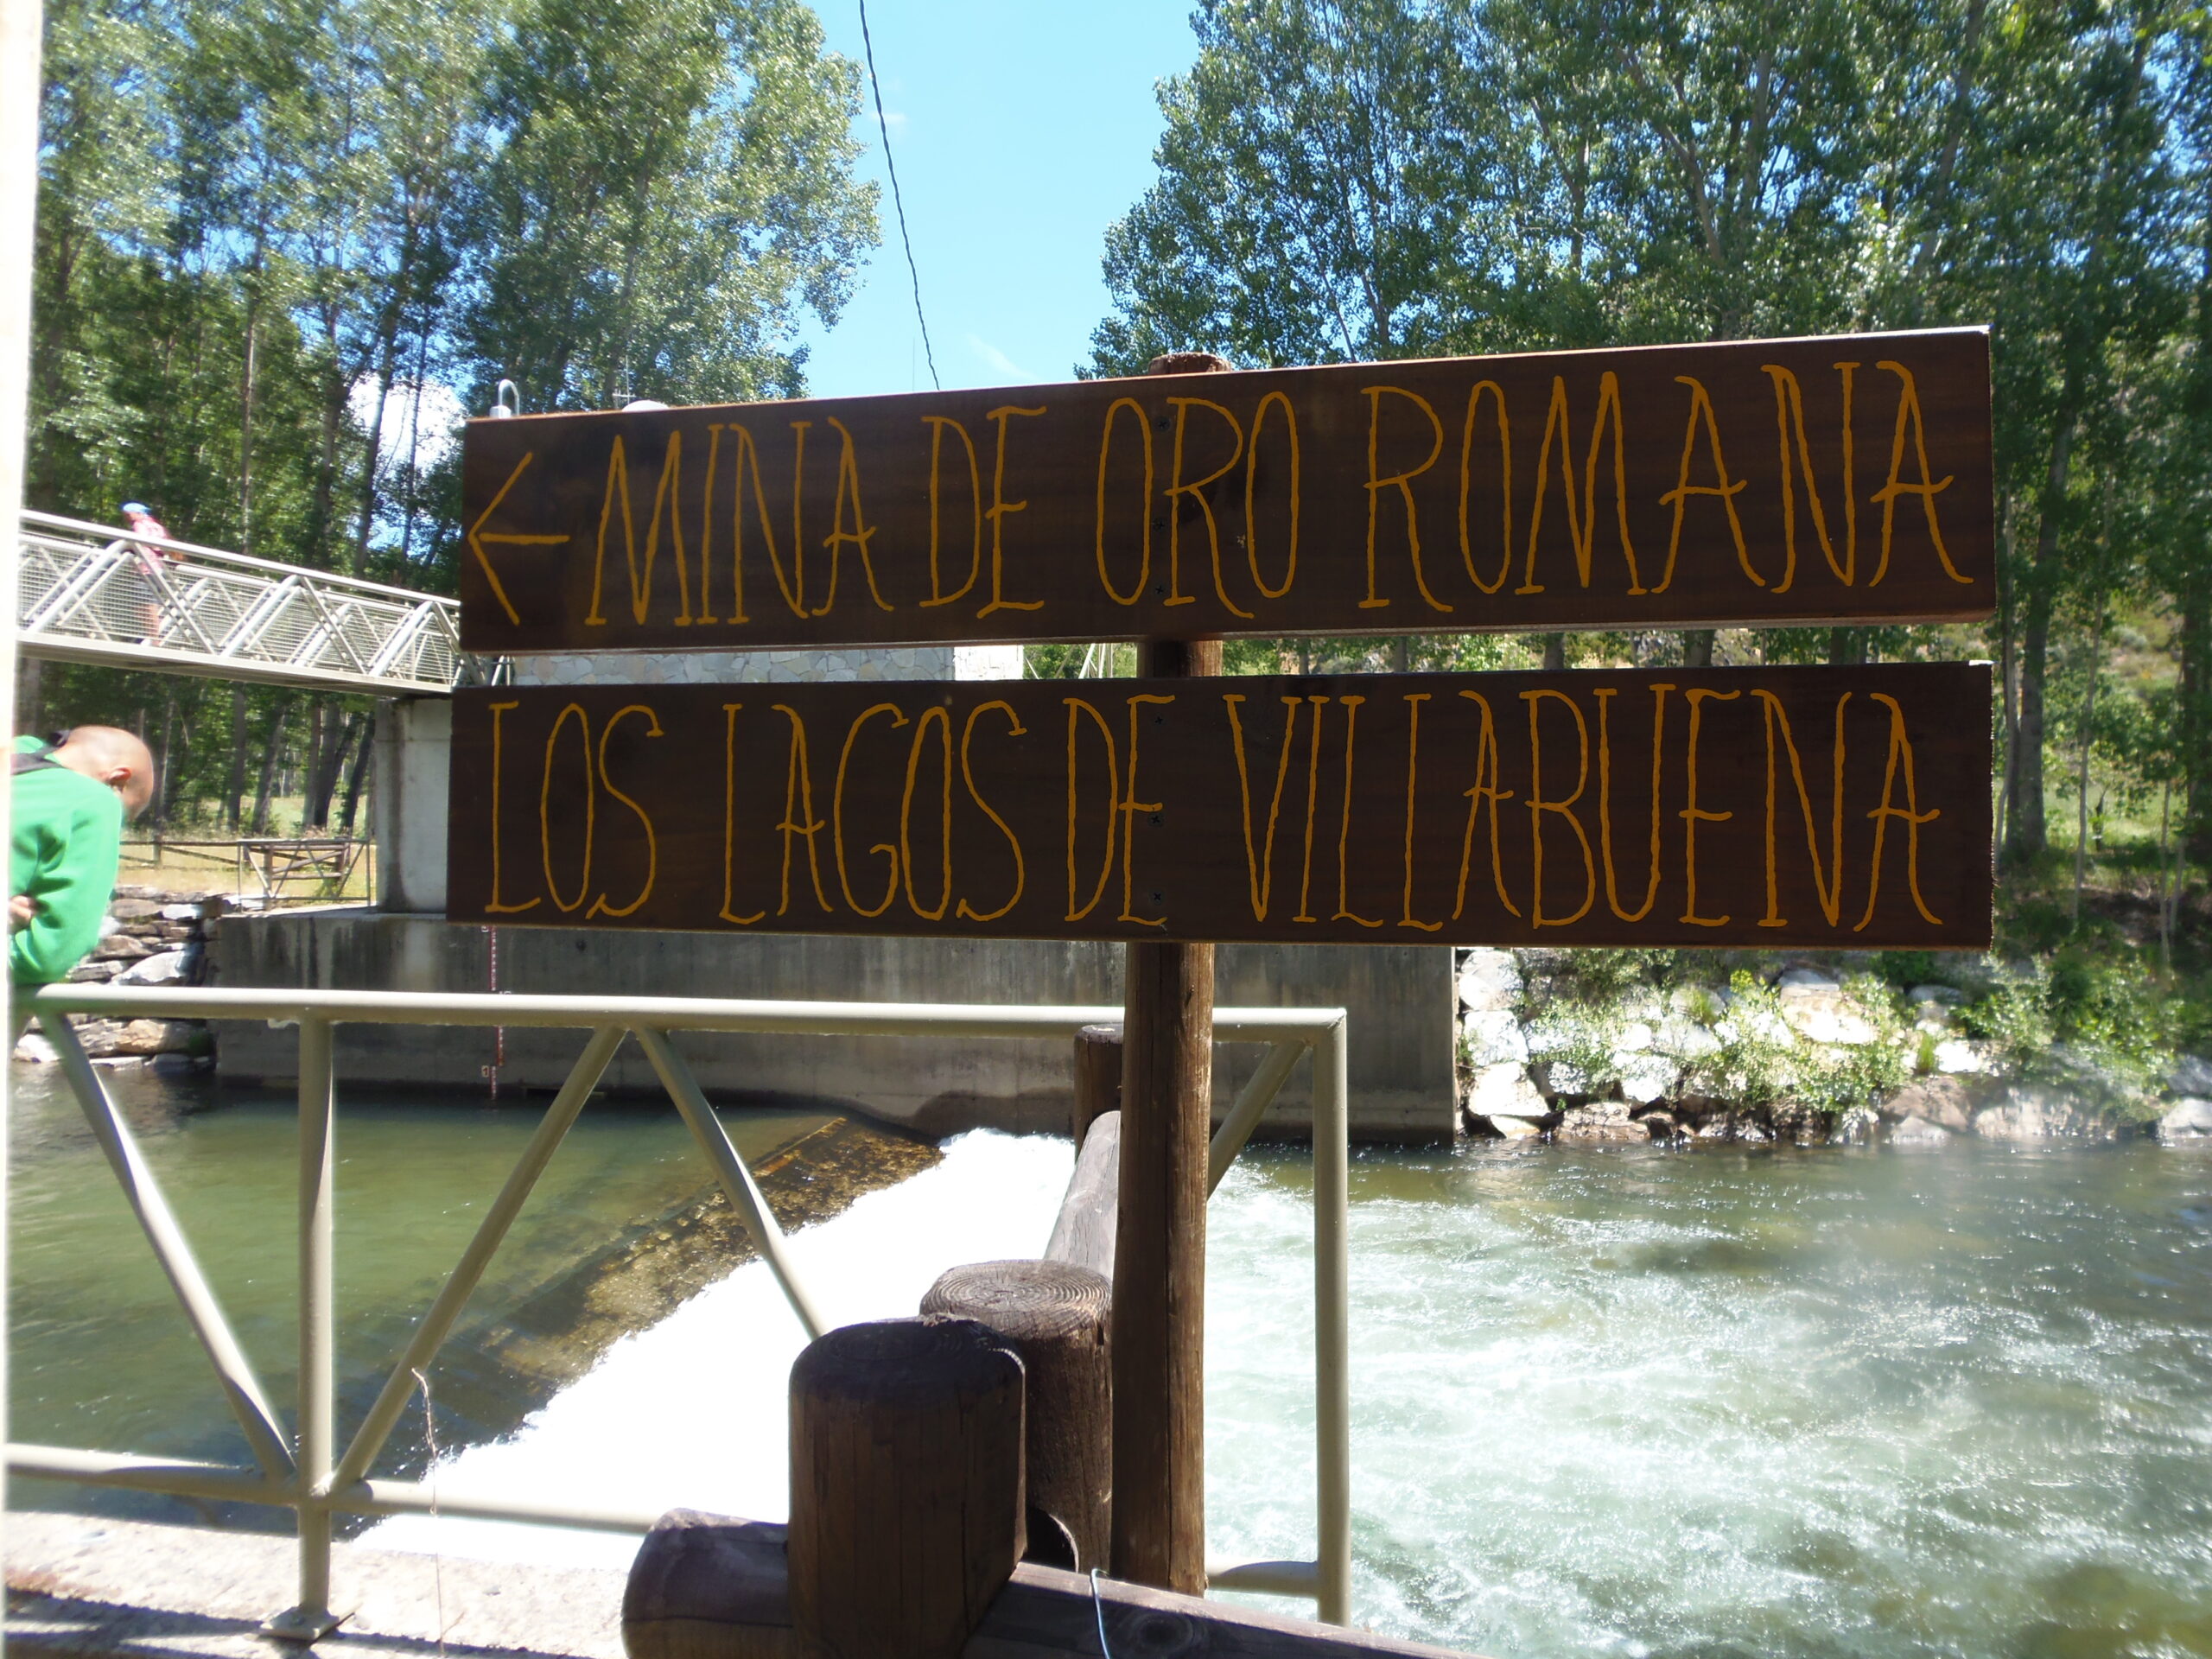 carteles mina de oro romana lagos villabuena